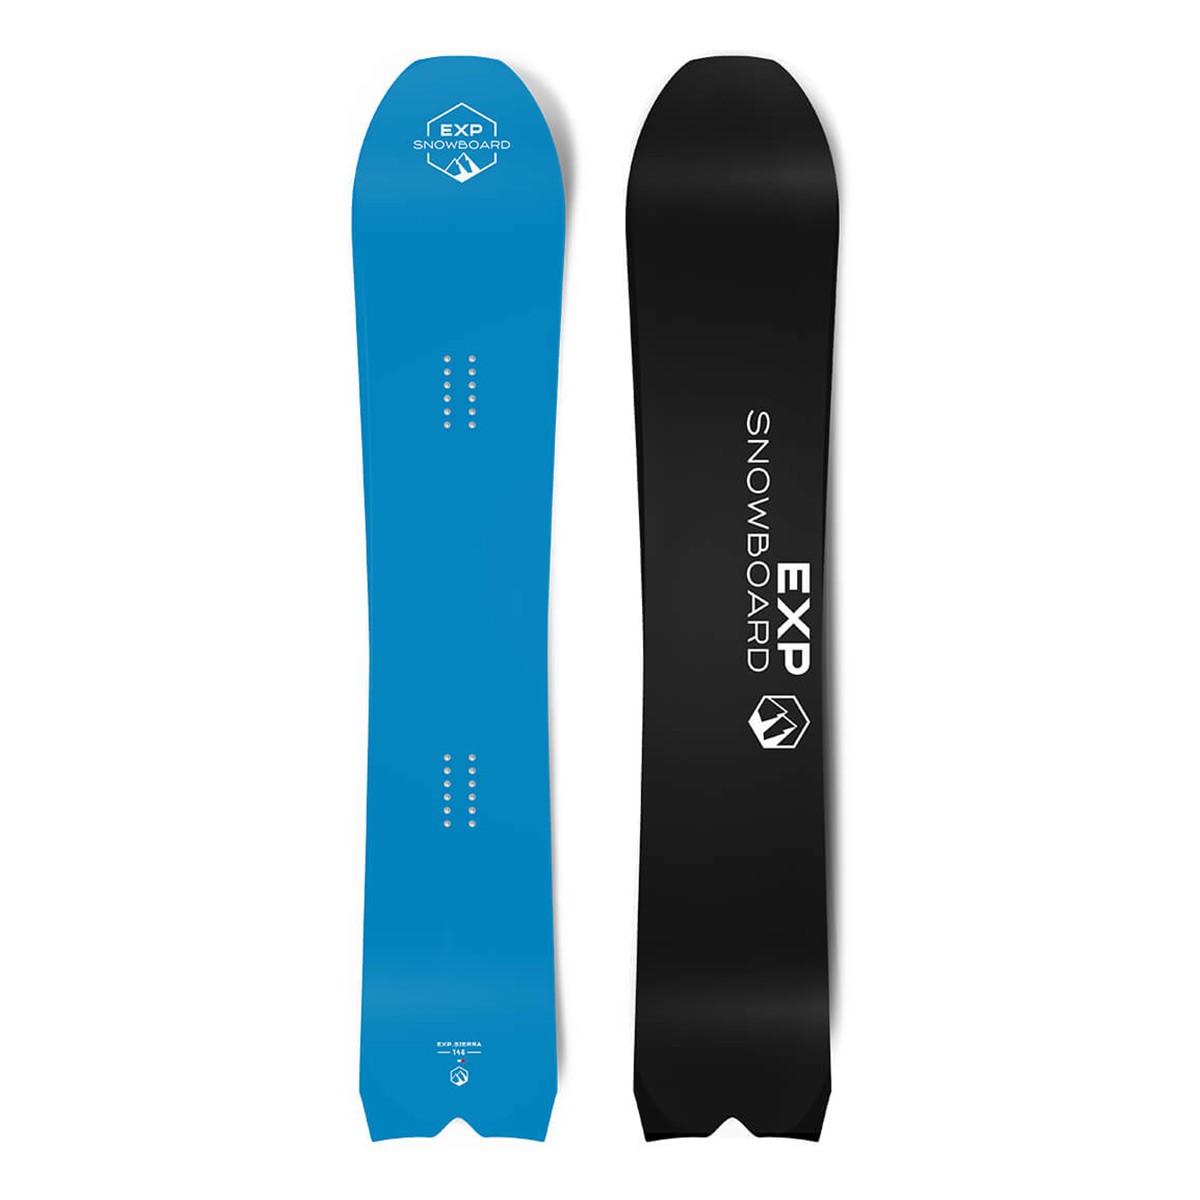  Tavola snowboard EXP Sierra (Colore: azzurro, Taglia: 160) 